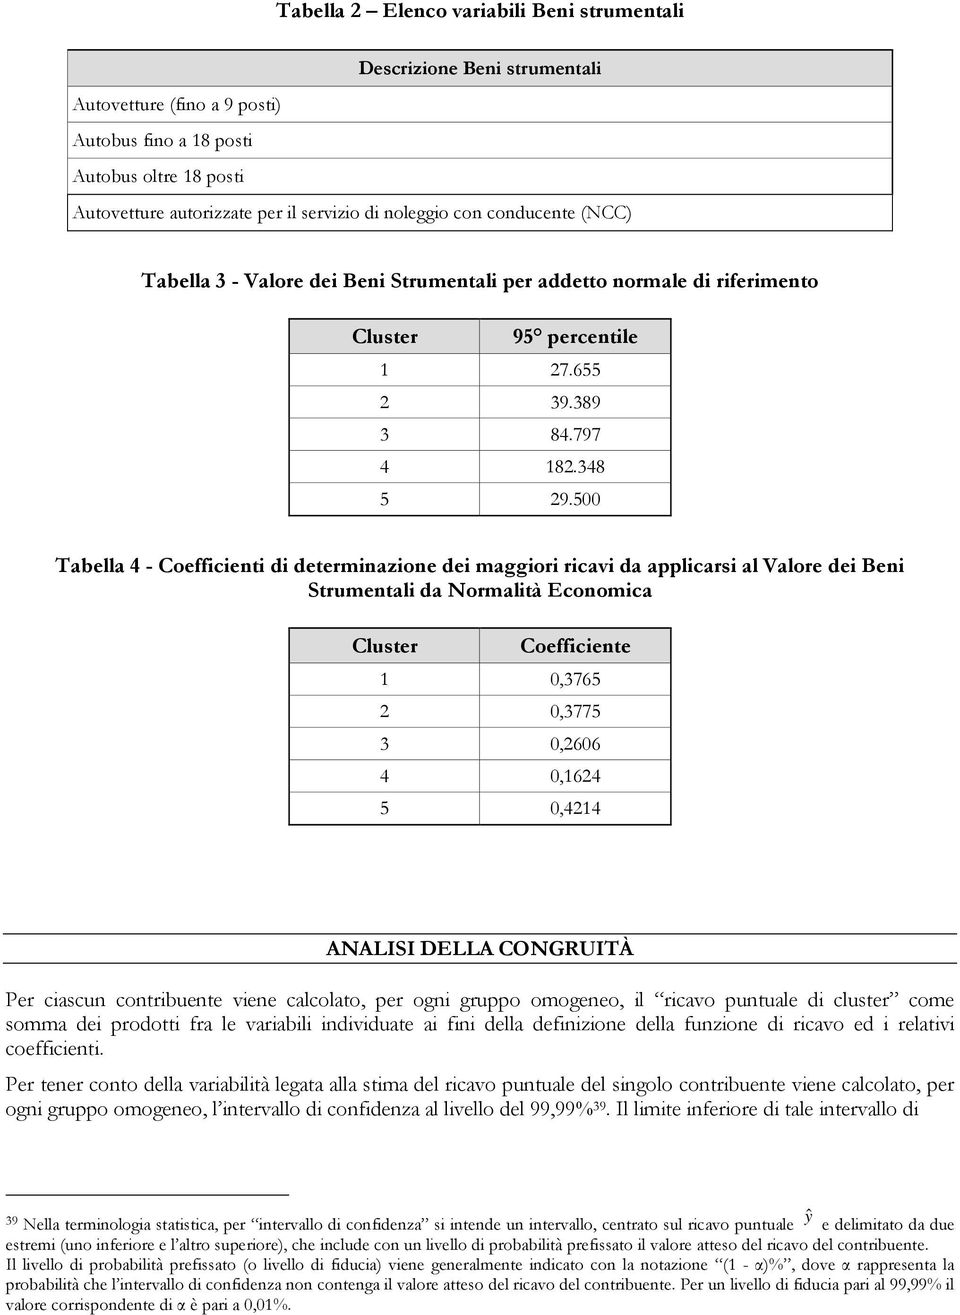 500 Tabella 4 - Coefficienti di determinazione dei maggiori ricavi da applicarsi al Valore dei Beni Strumentali da Normalità Economica Cluster Coefficiente 1 0,3765 2 0,3775 3 0,2606 4 0,1624 5